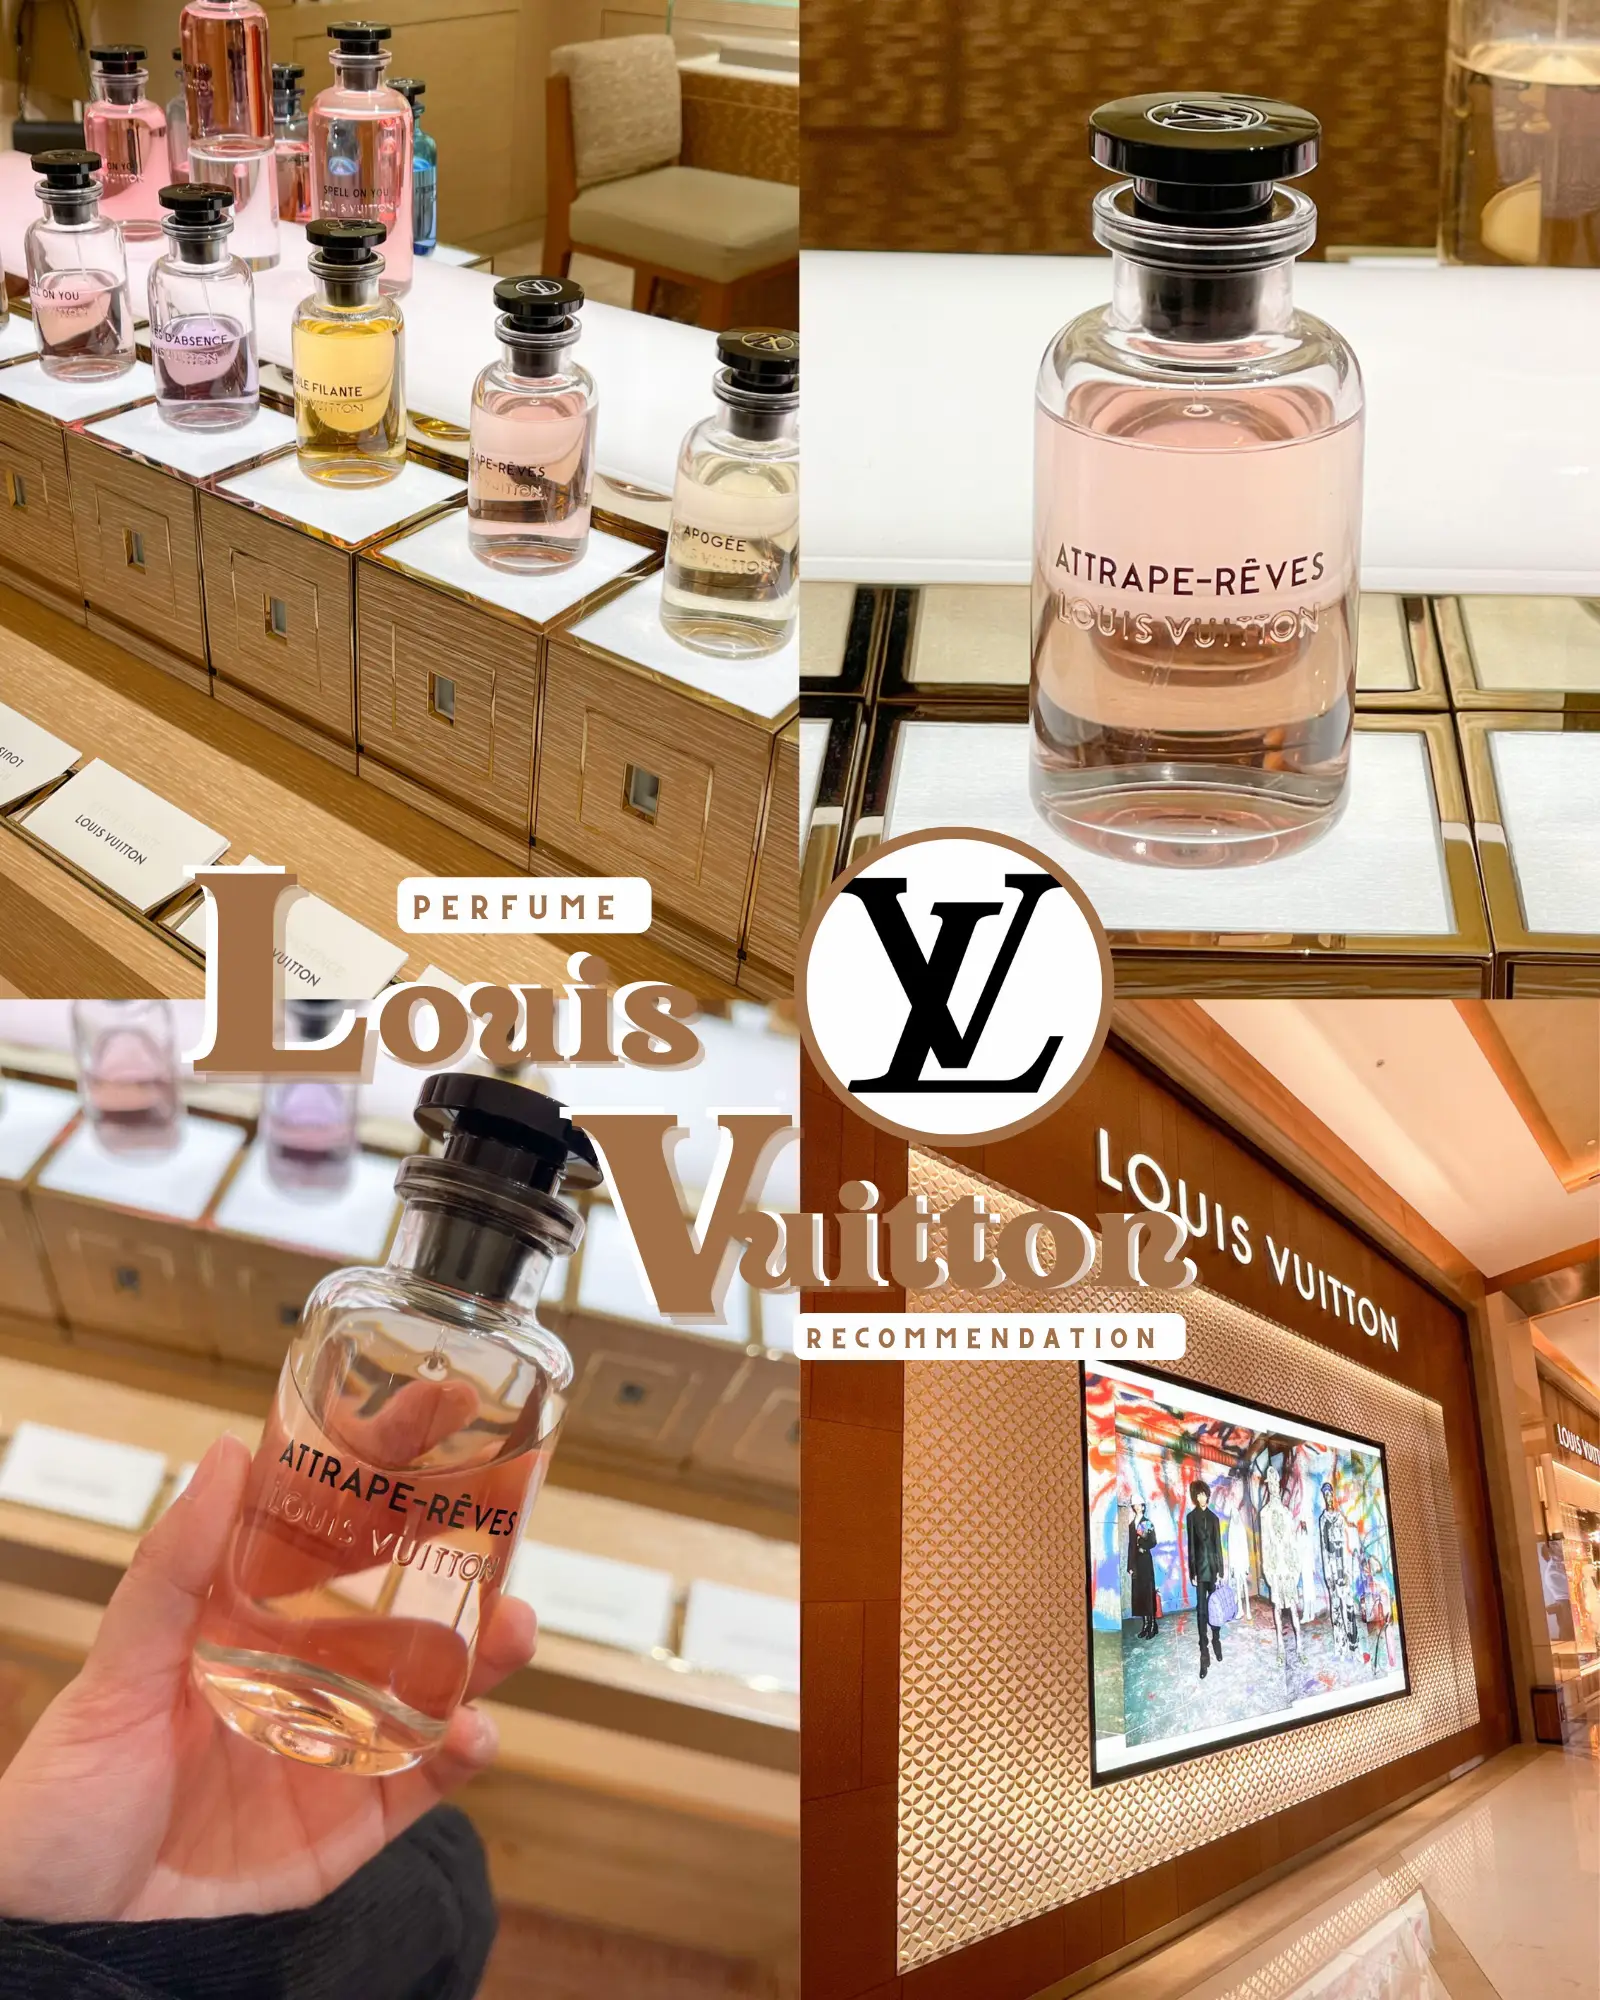 Louis Vuitton, Other, Louis Vuitton Attrape Reves Eau De Parfum